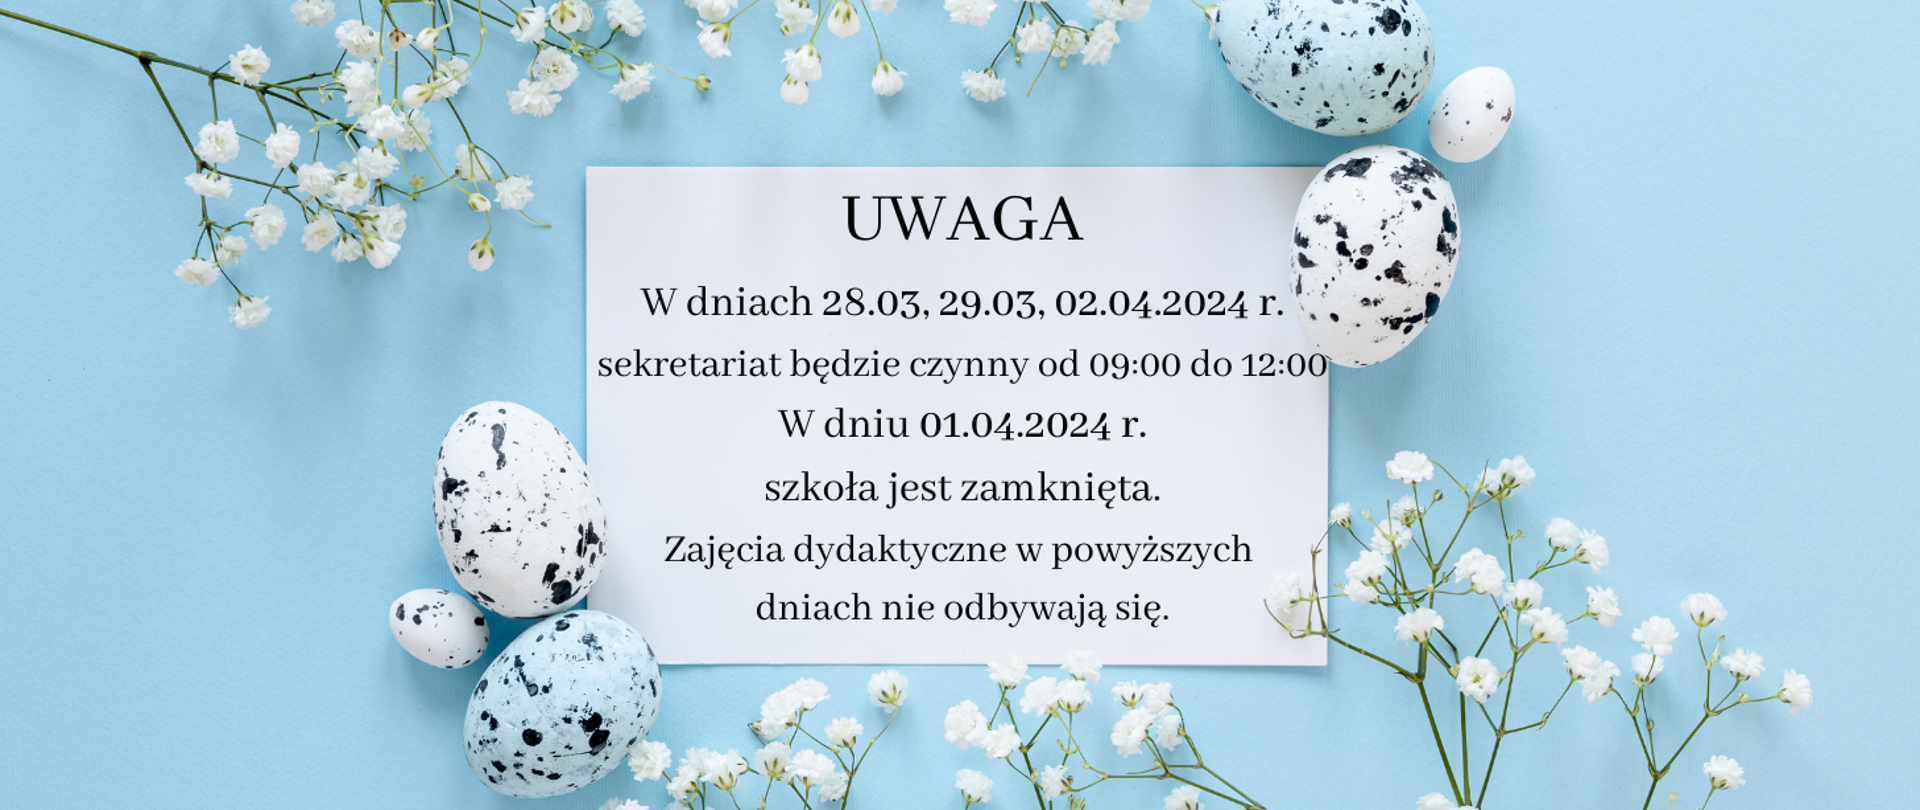 Informacja na niebieskim tle z grafiką jajek świątecznych oraz kwiatków z tekstem "UWAGA
W dniach 28.03, 29.03, 02.04.2024 r. sekretariat będzie czynny od 09:00 do 12:00 W dniu 01.04.2024 r. szkoła jest zamknięta. Zajęcia dydaktyczne w powyższych
dniach nie odbywają się."